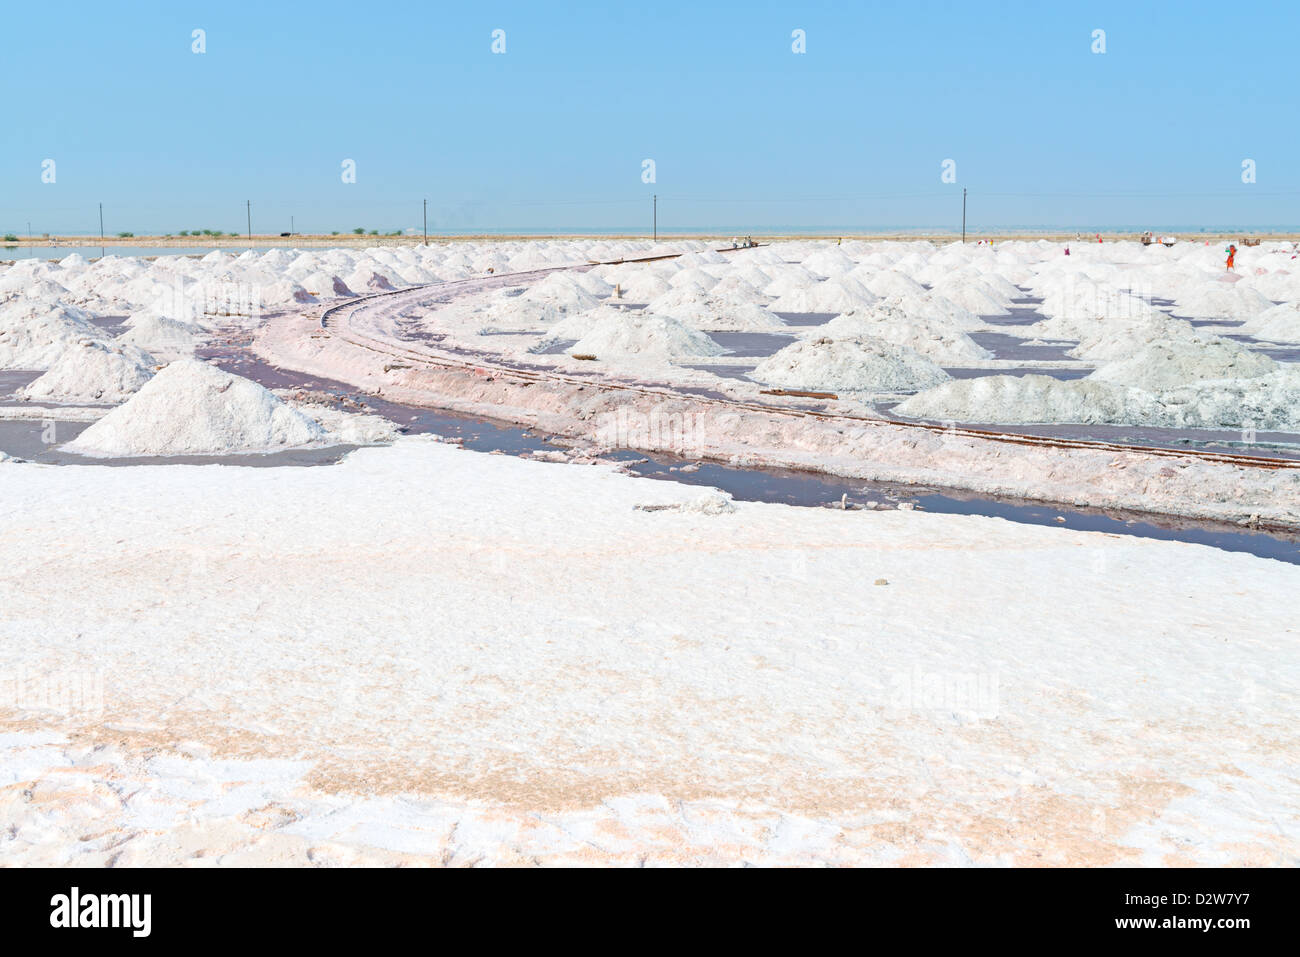 Salz Bauernhof Sambhar Salt Lake, Indien. Es ist Indiens größte Salzsee und jedes Jahr 196 k t sauber Salz produziert. Stockfoto